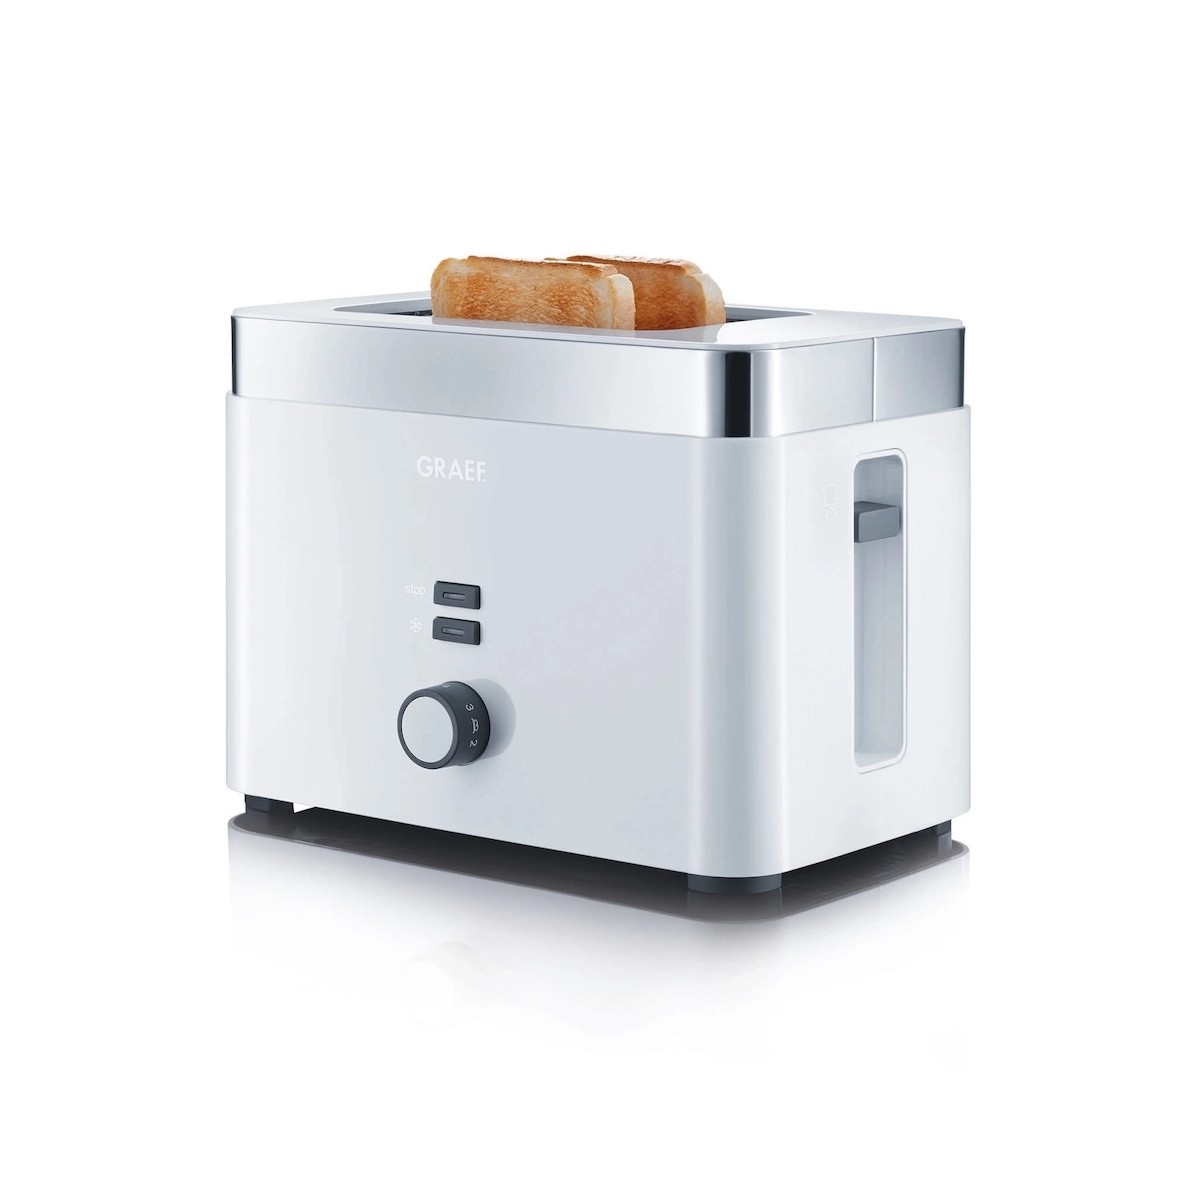 GRAEF TO61 toaster - white